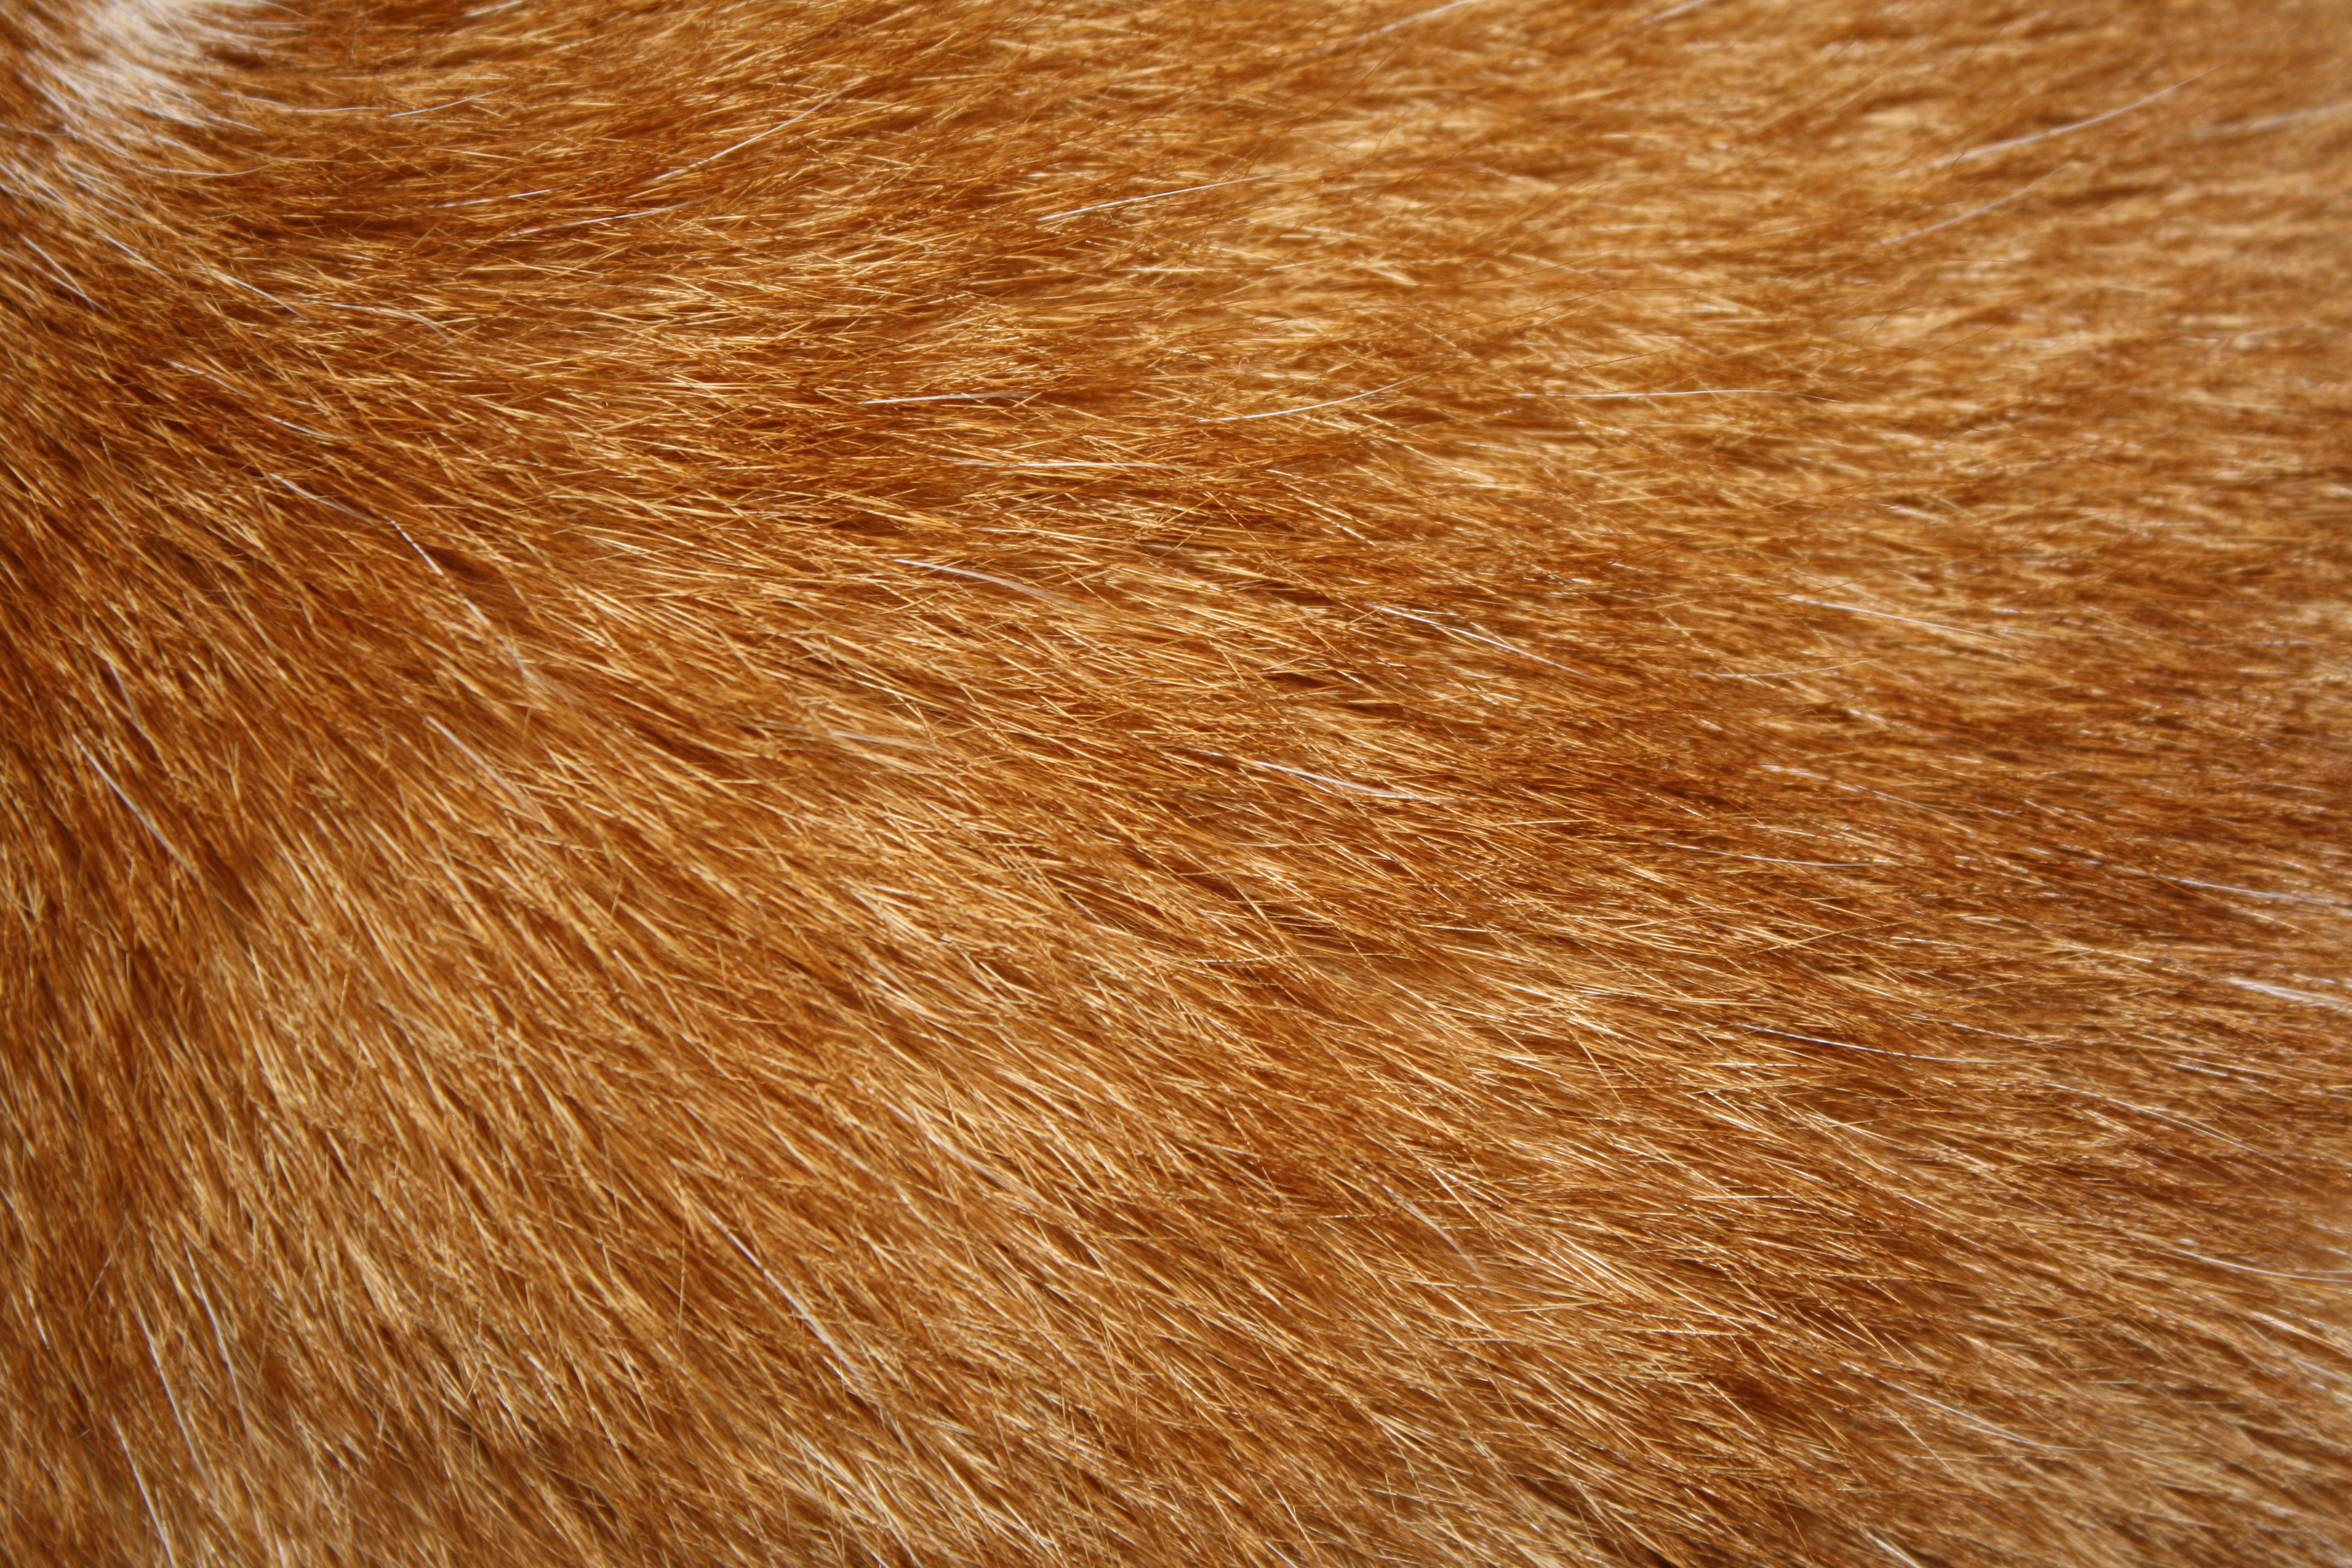 Orange Tabby Cat Fur Texture Picture Photograph Photos Public 3888x2592.